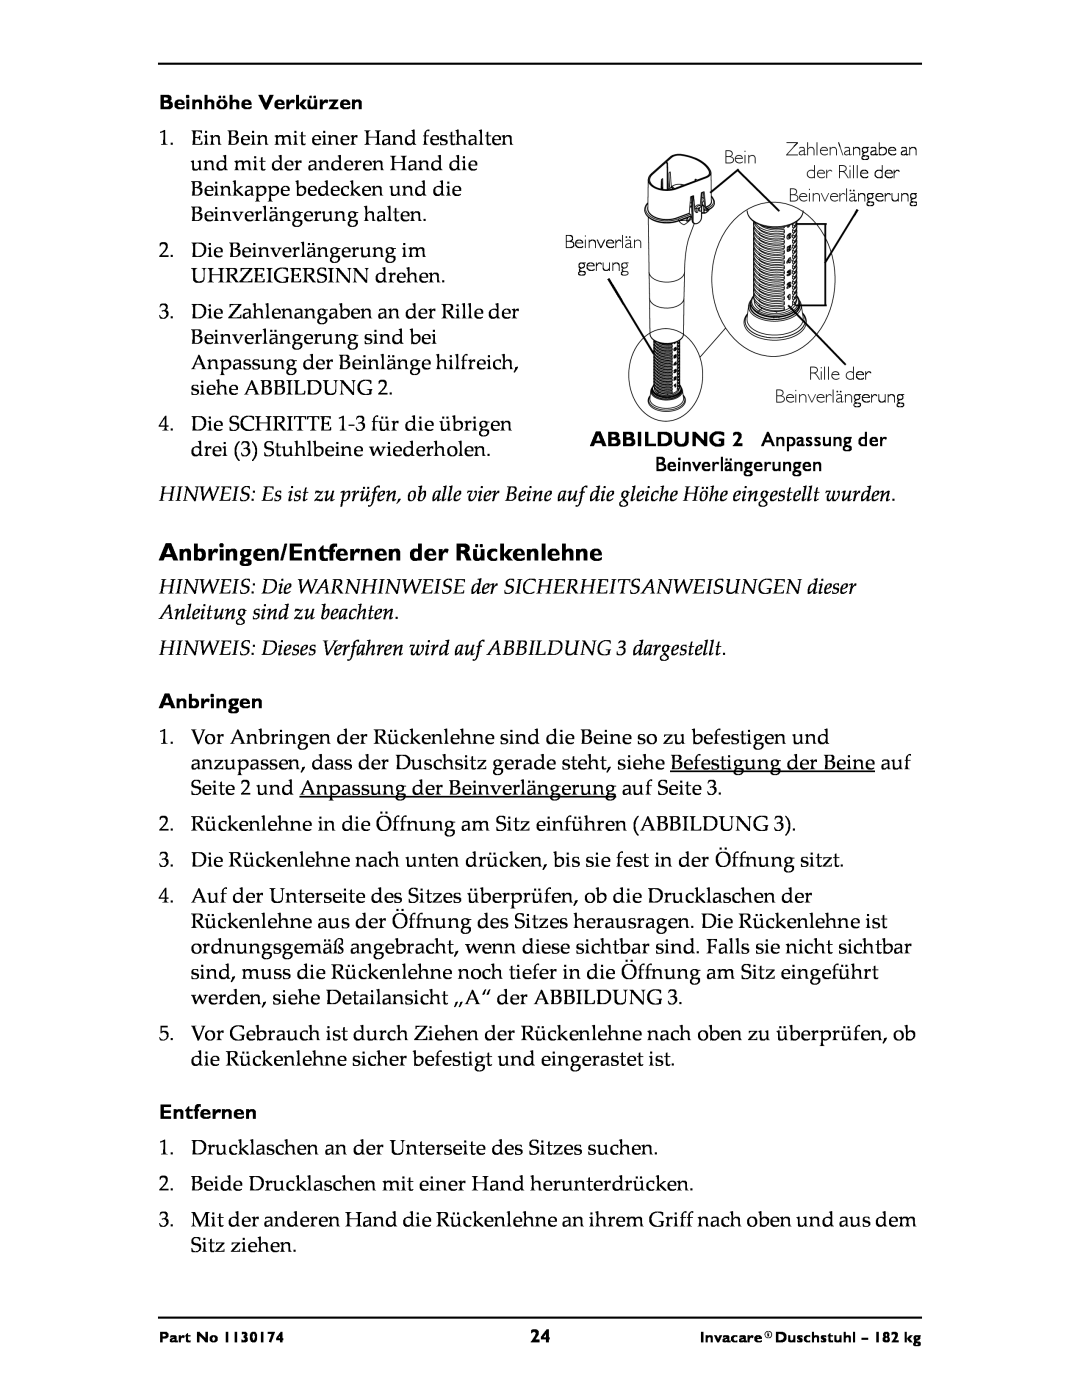 Invacare 9780E, 9781E instruction sheet Anbringen/Entfernen der Rückenlehne, Beinhöhe Verkürzen 